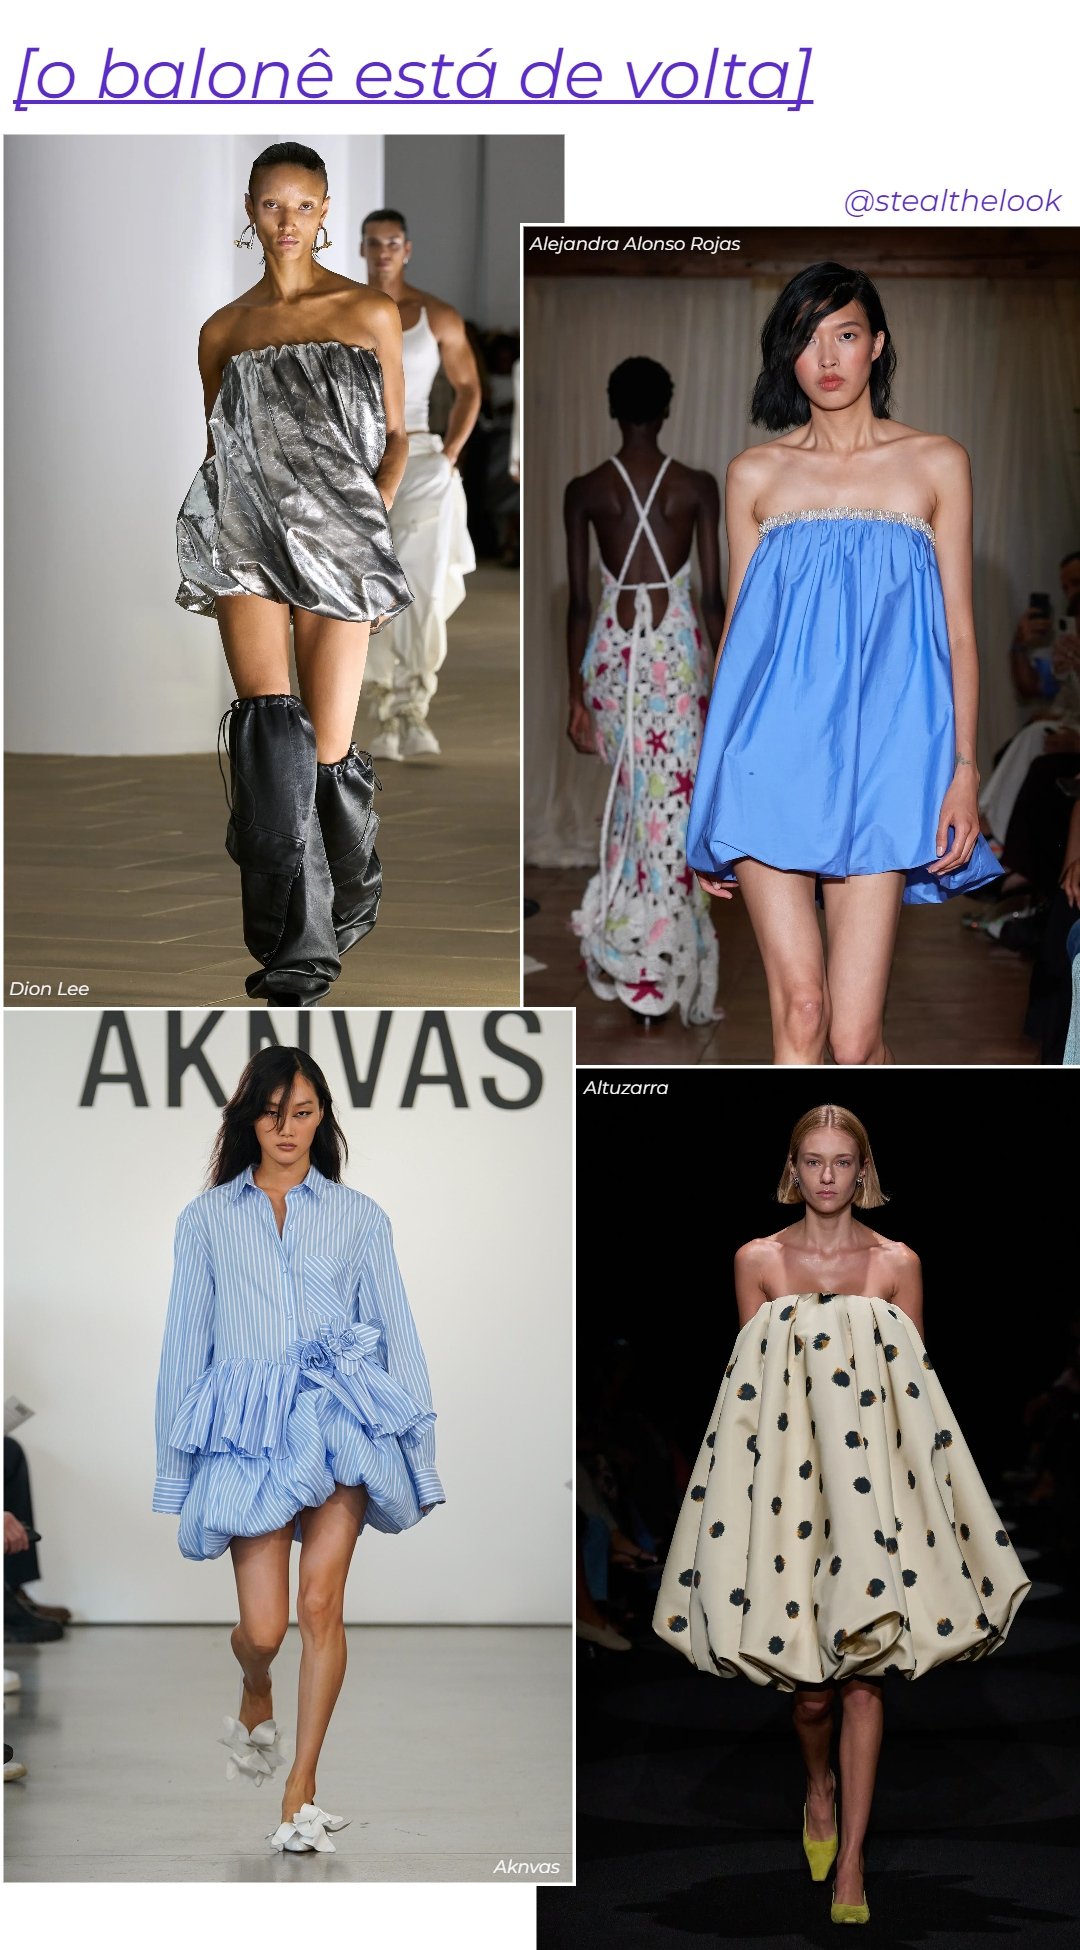 Alejandra Alonso Rojas, Alturarra, Dion Lee e Aknvas - roupas diversas estilo balonê - verão 2024 - primavera - colagem de imagens - https://stealthelook.com.br